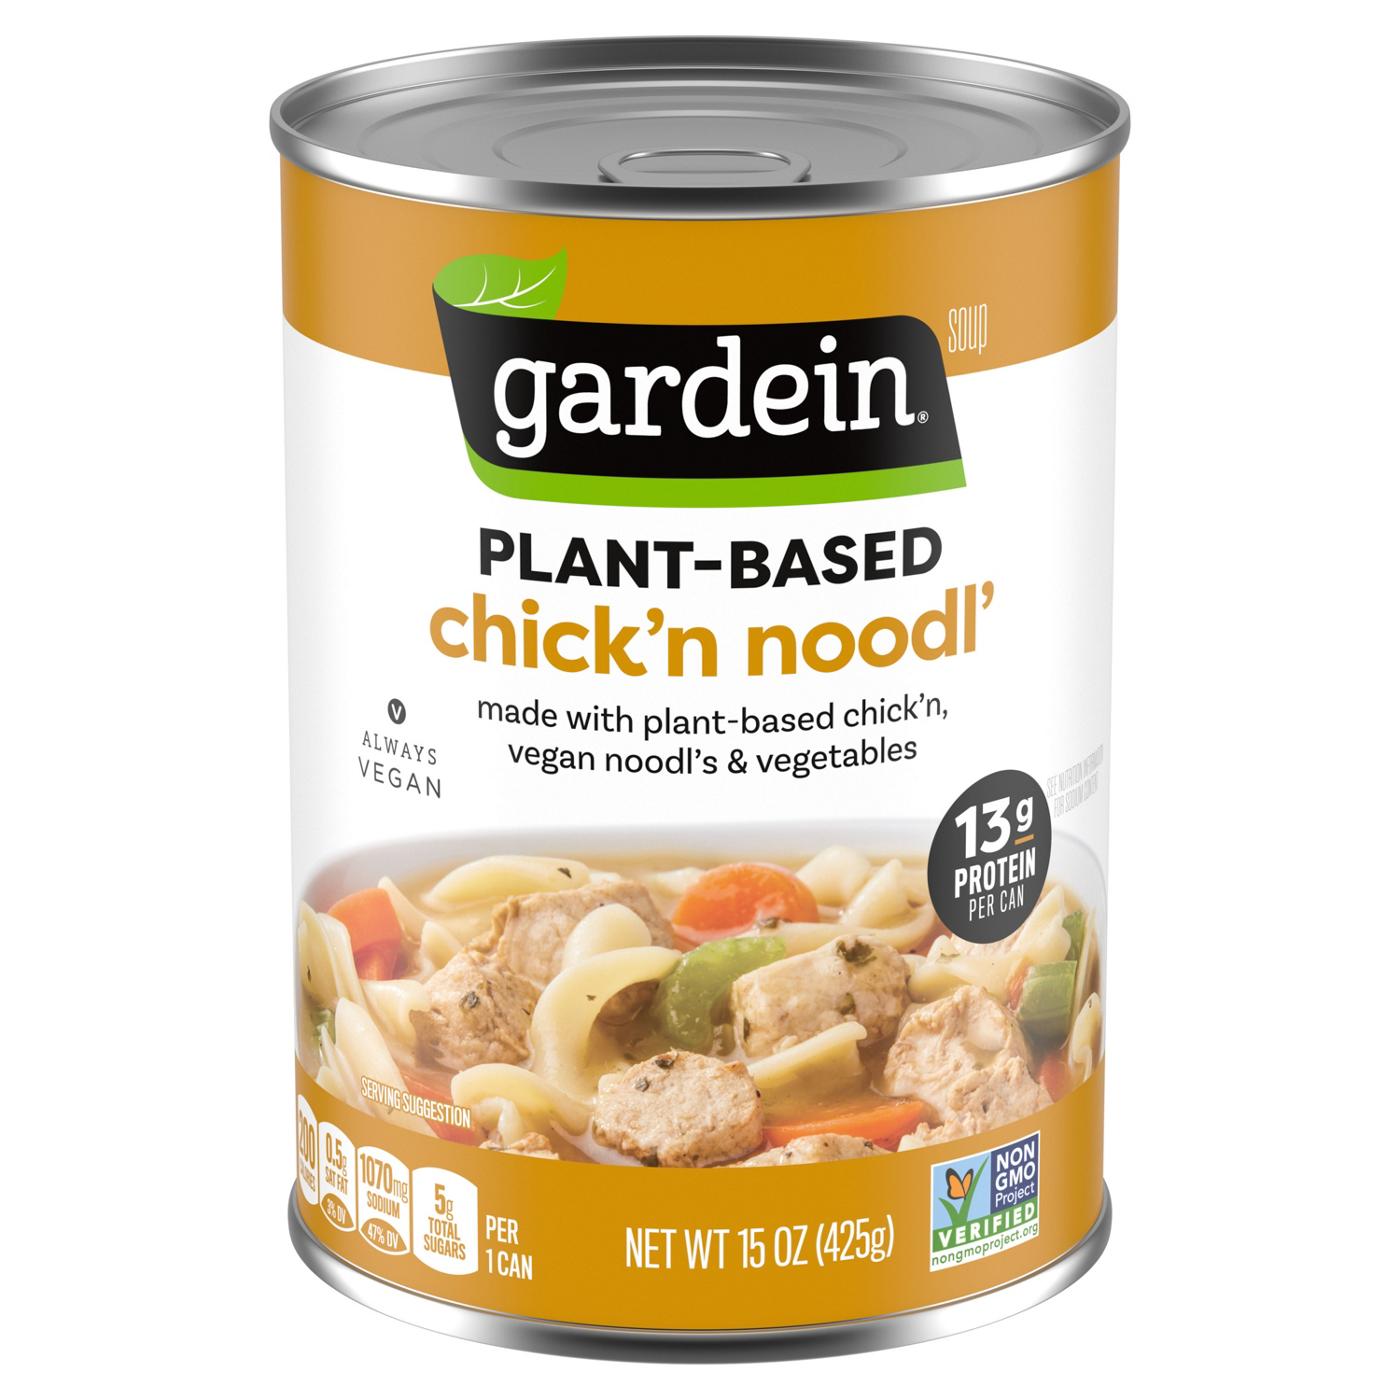 Gardein Vegan Plant-Based Chick'n Noodl' Soup; image 1 of 6